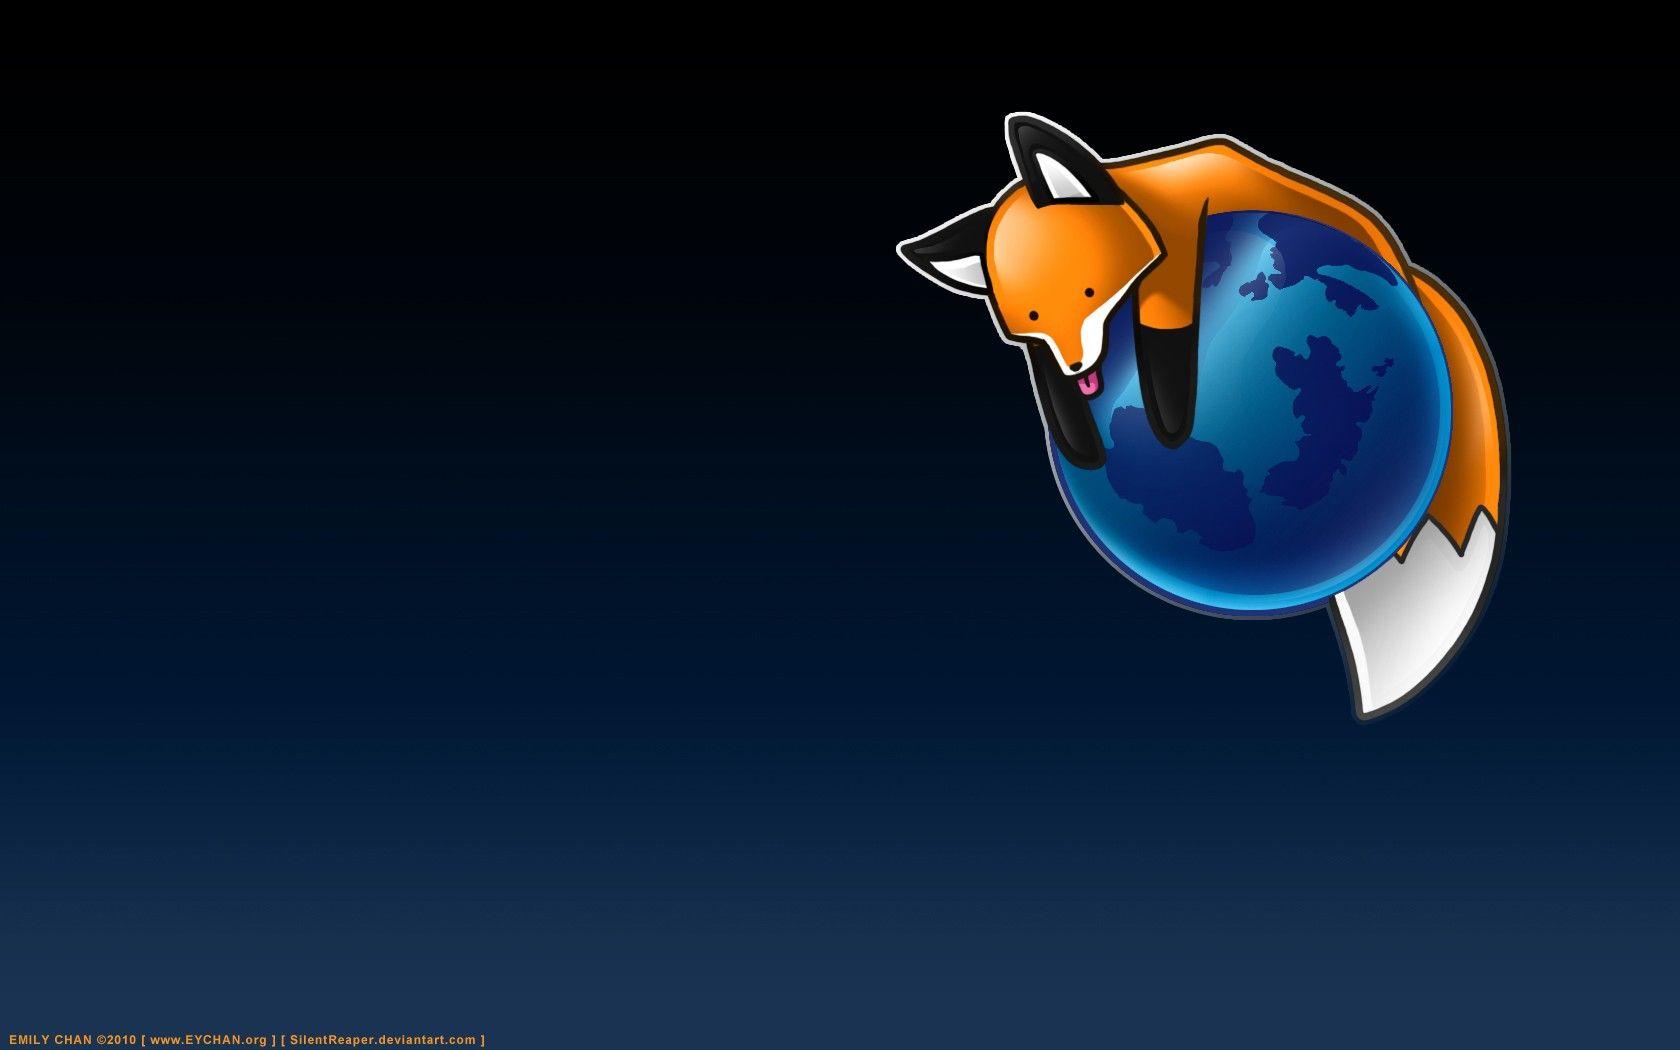 Cartoon Earth Logo - Wallpaper : illustration, animals, planet, Earth, logo, cartoon ...